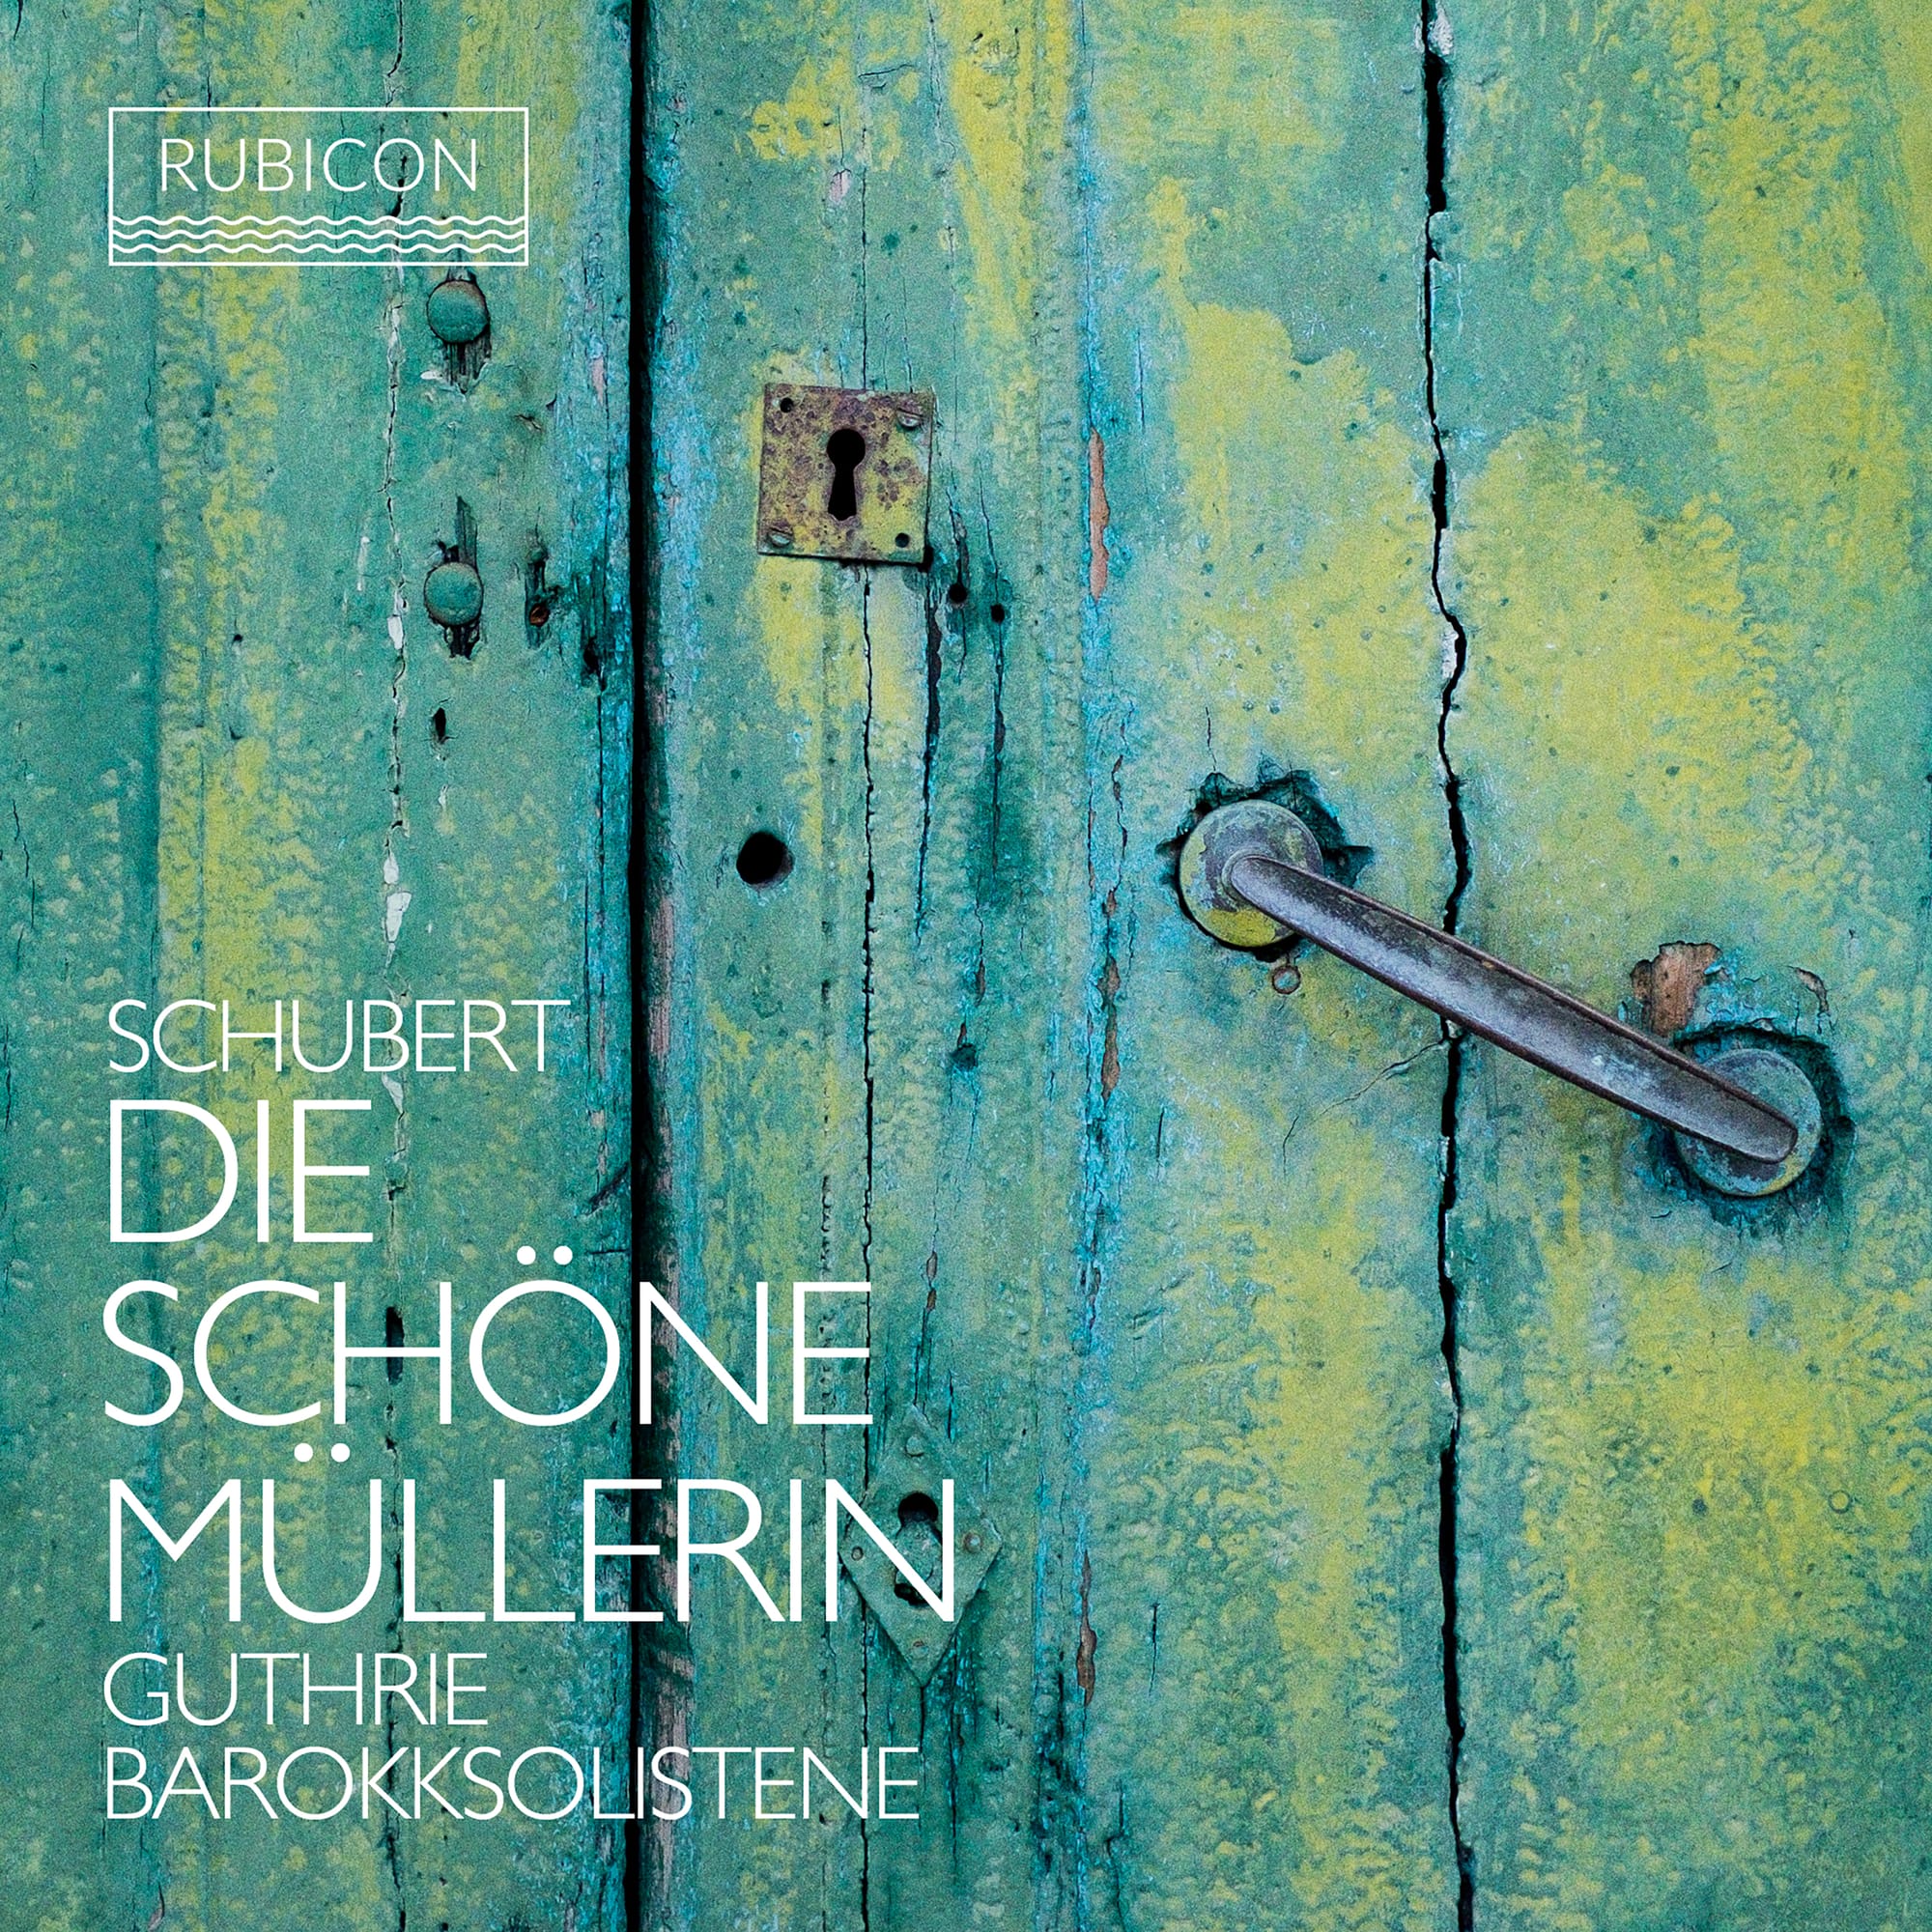 Schubert's Die schöne Müllerin: the pub edition!